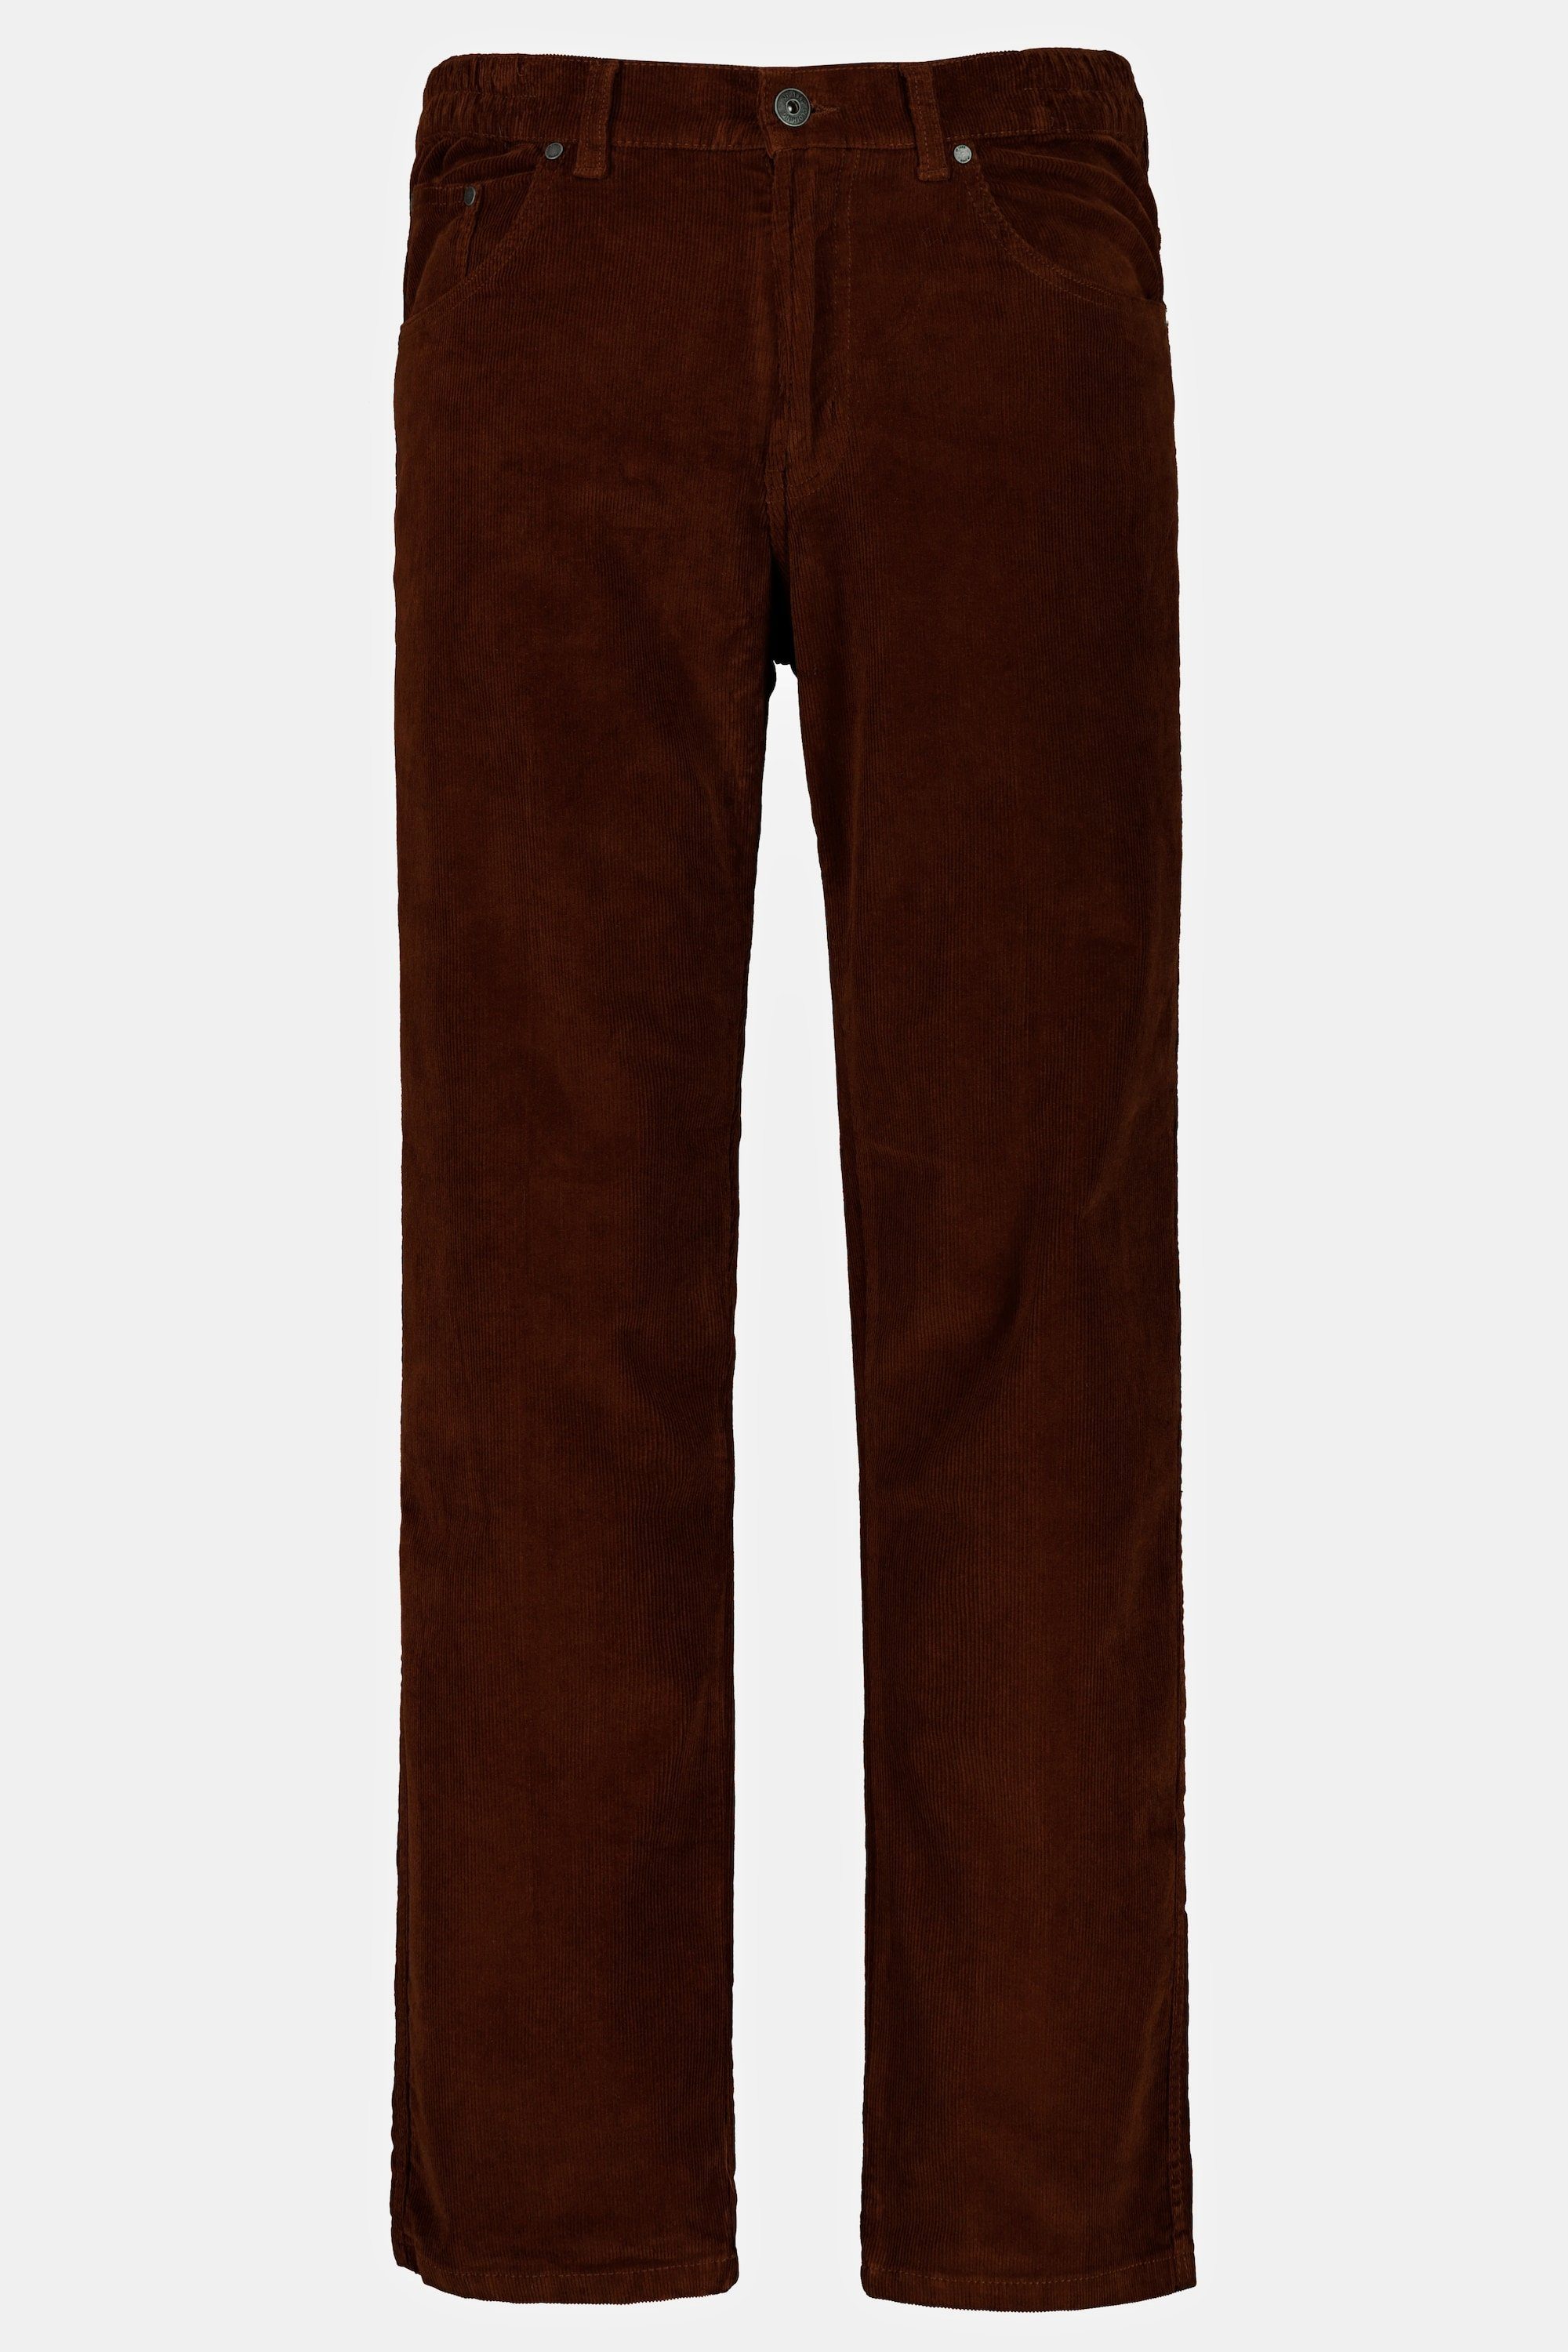 JP1880 mahagonibraun Bund elastischer 5-Pocket-Jeans seitlich Cordhose 5-Pocket